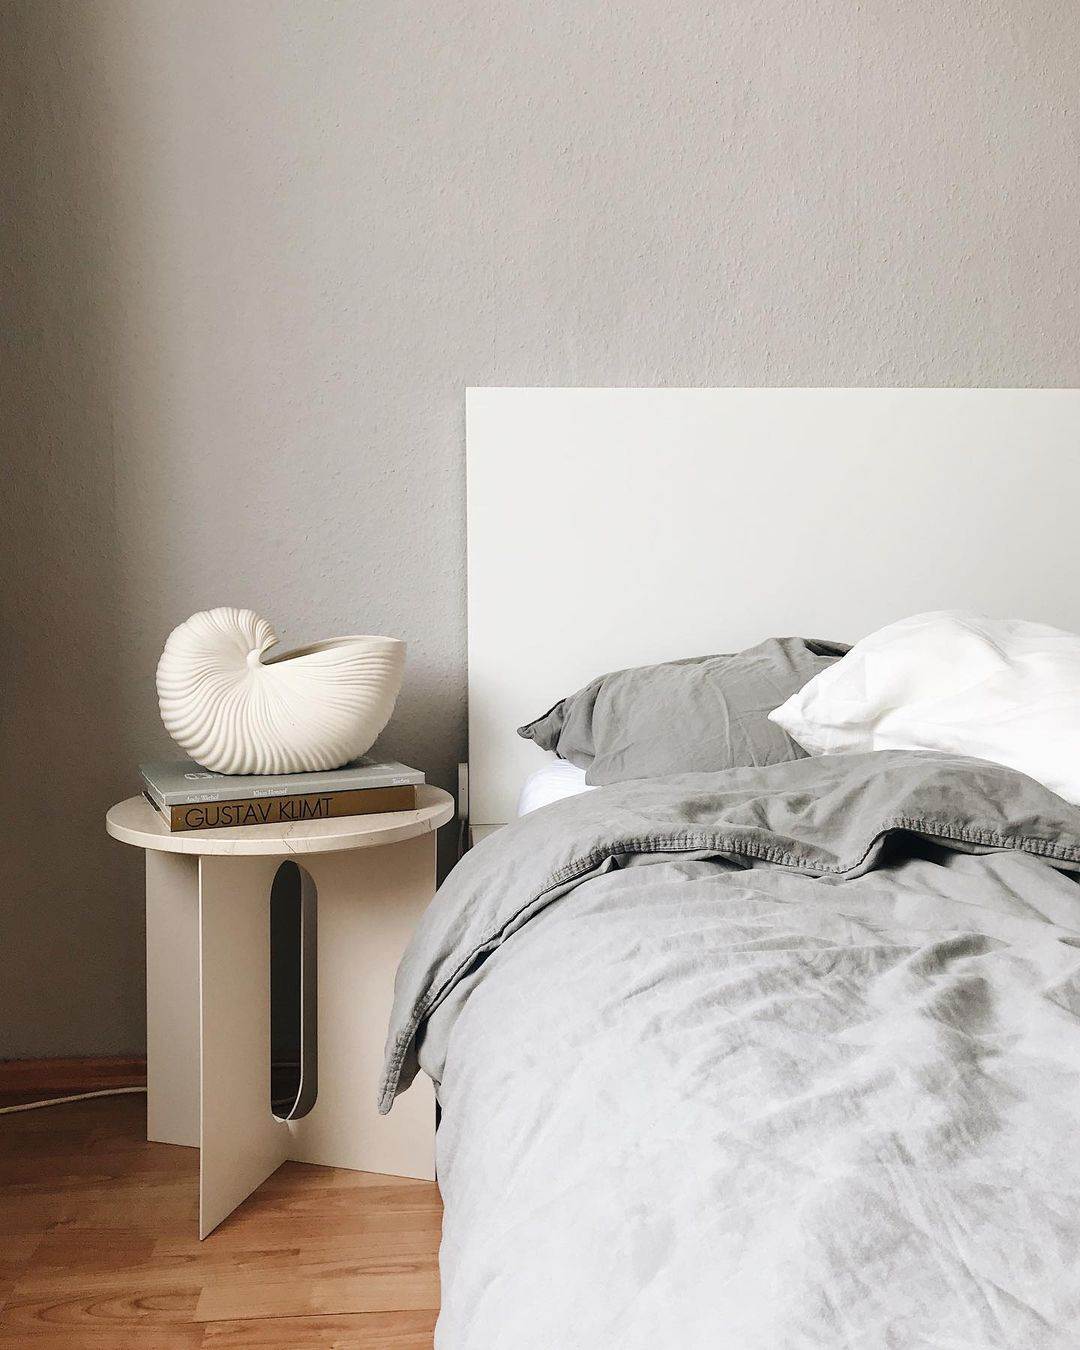 Bedroom styling tips - nightstands